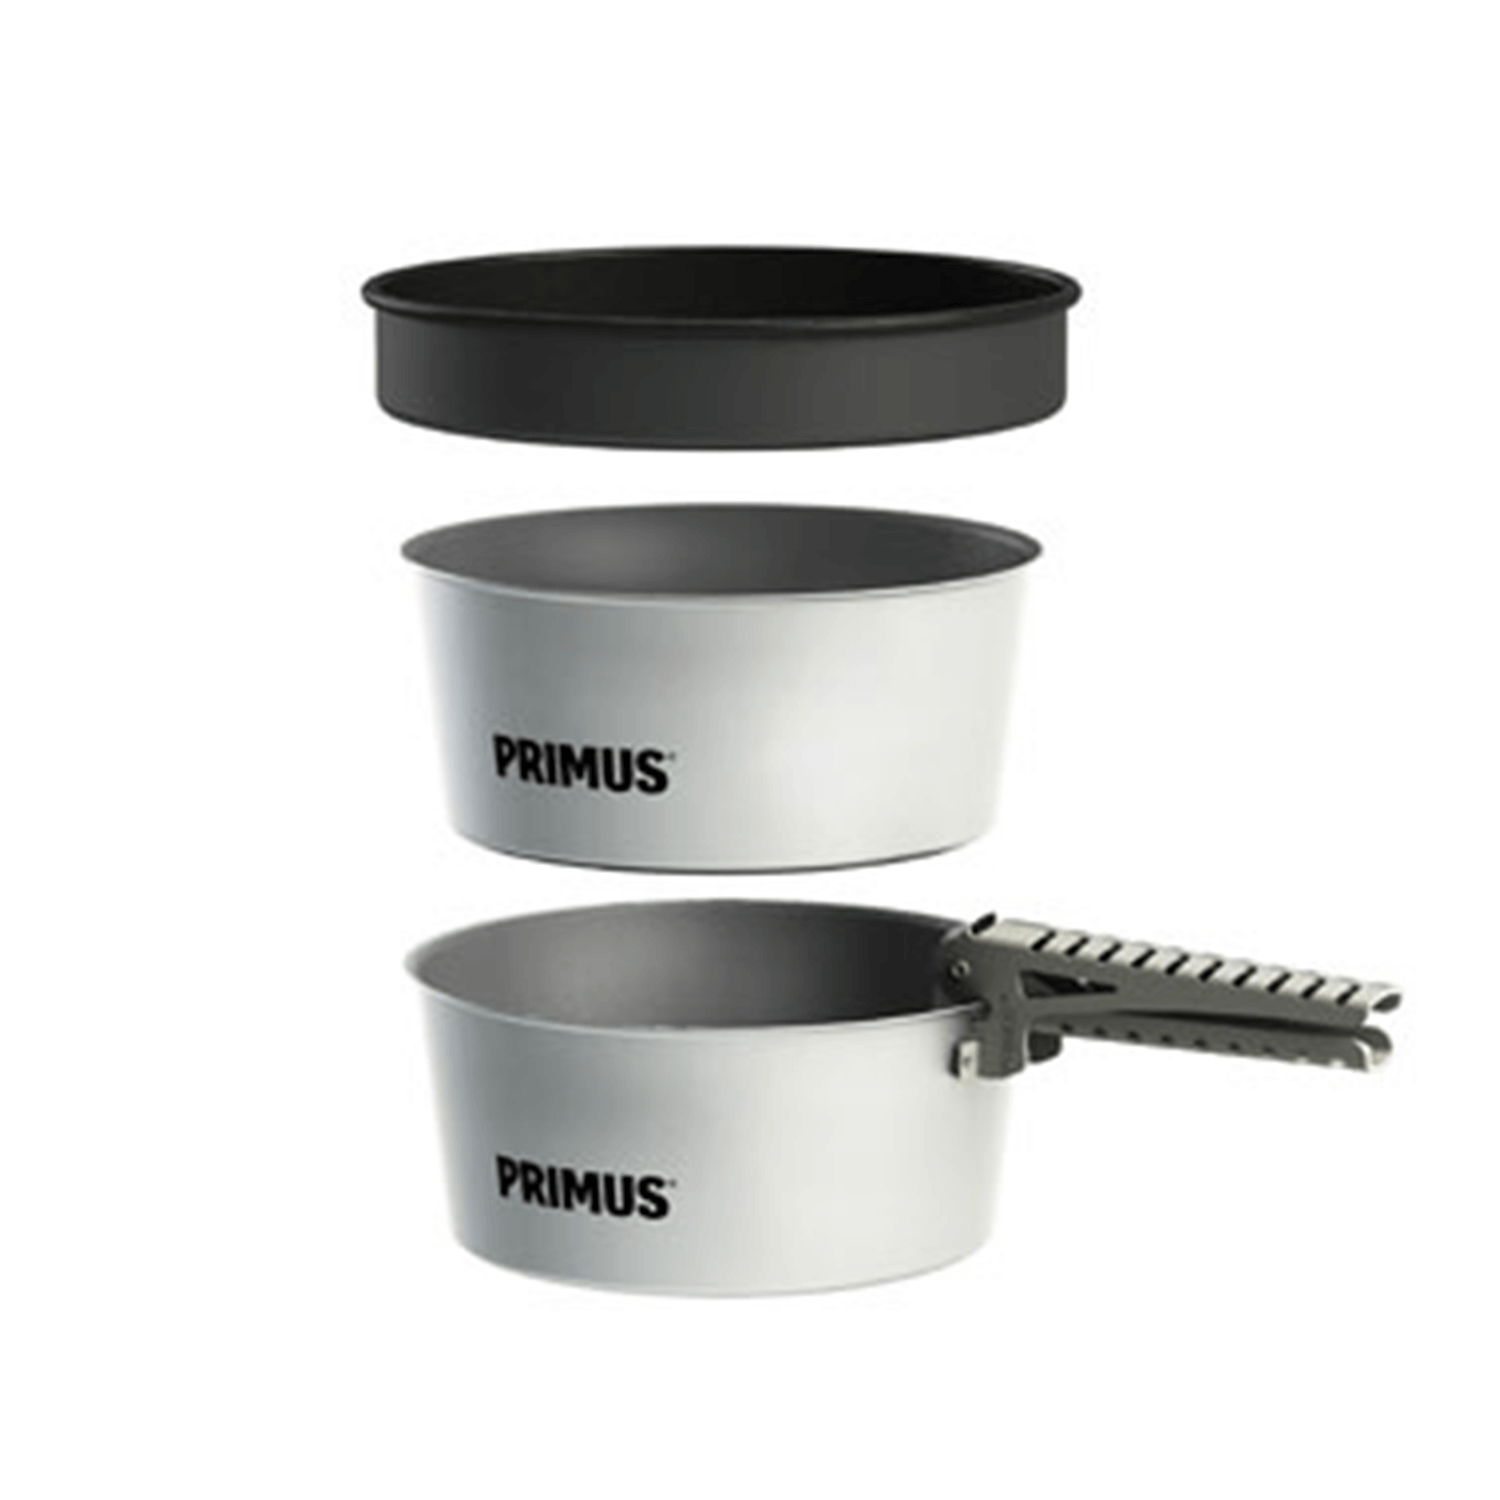  Primus Potset Essentials 2x2.3L